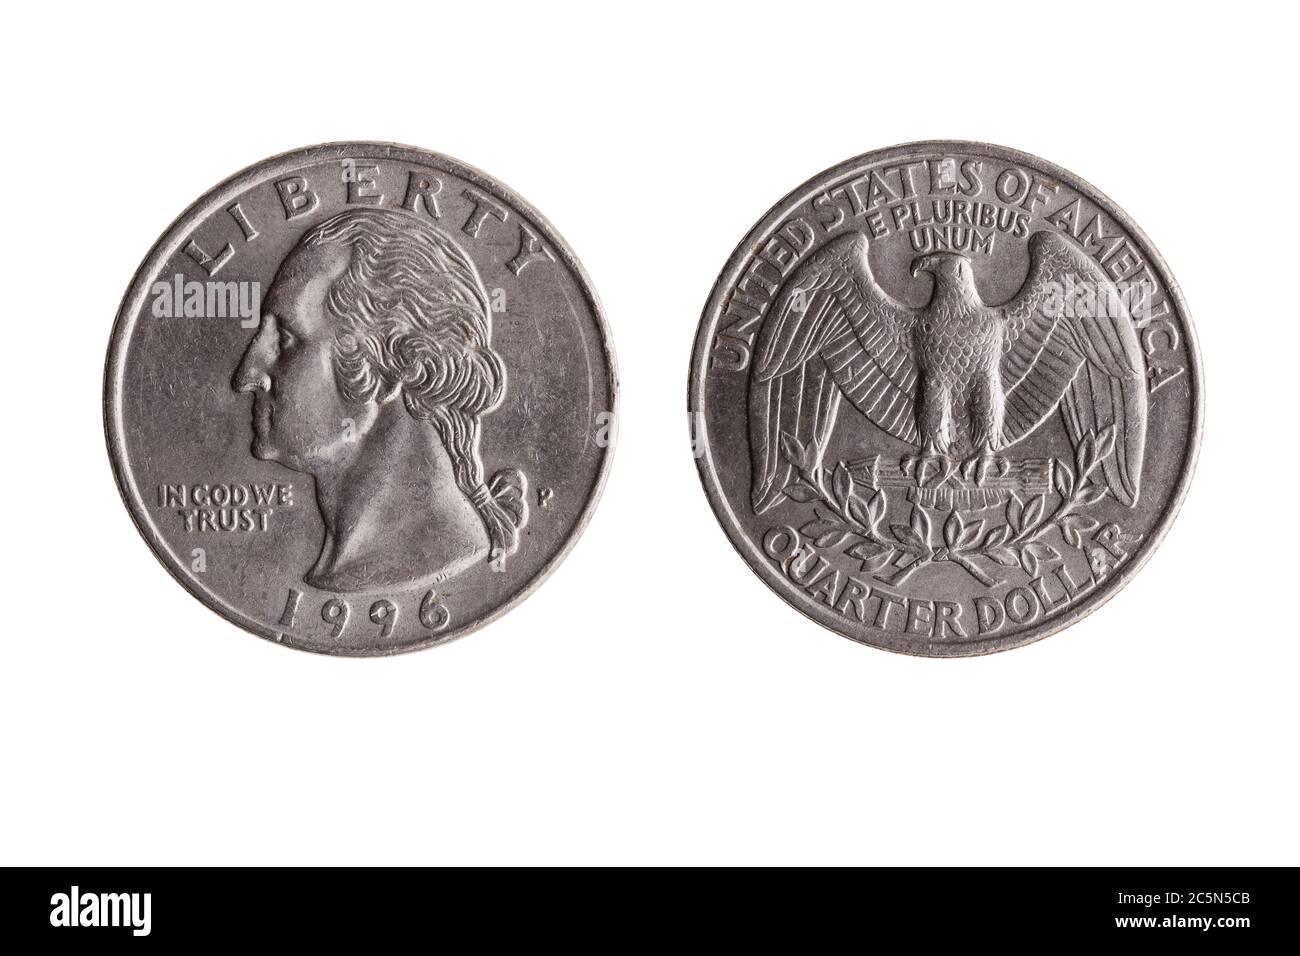 Moneta di nichel del dollaro del quarto degli Stati Uniti (25 centesimi) con un'immagine ritratto dell'ossatura di George Washington e dell'aquila baldana tagliata e isolata su una ba bianca Foto Stock